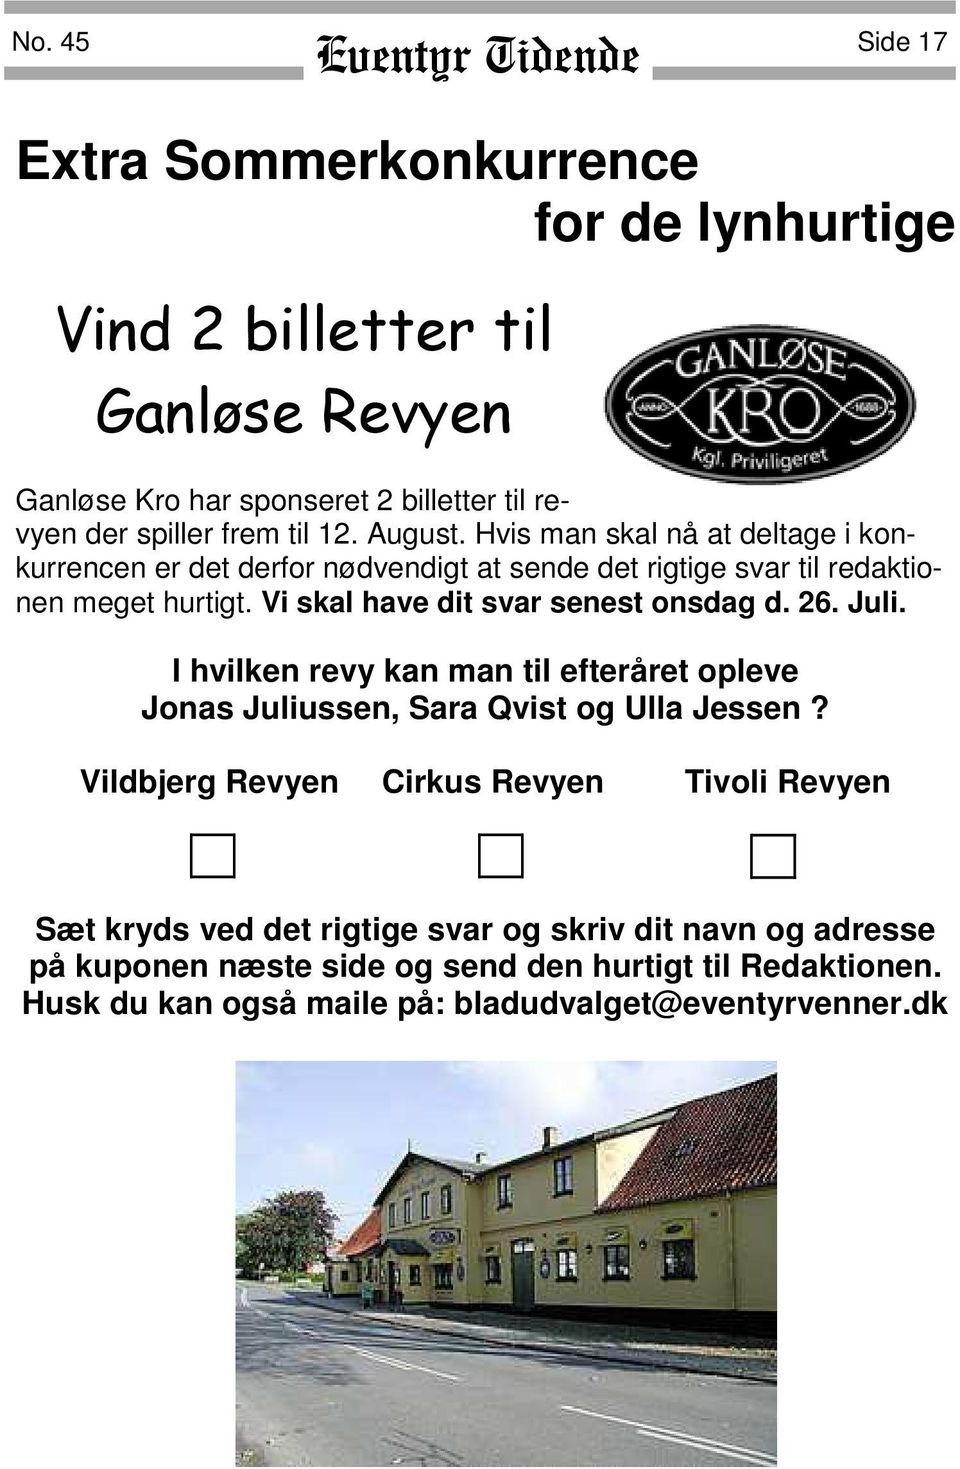 Vi skal have dit svar senest onsdag d. 26. Juli. I hvilken revy kan man til efteråret opleve Jonas Juliussen, Sara Qvist og Ulla Jessen?